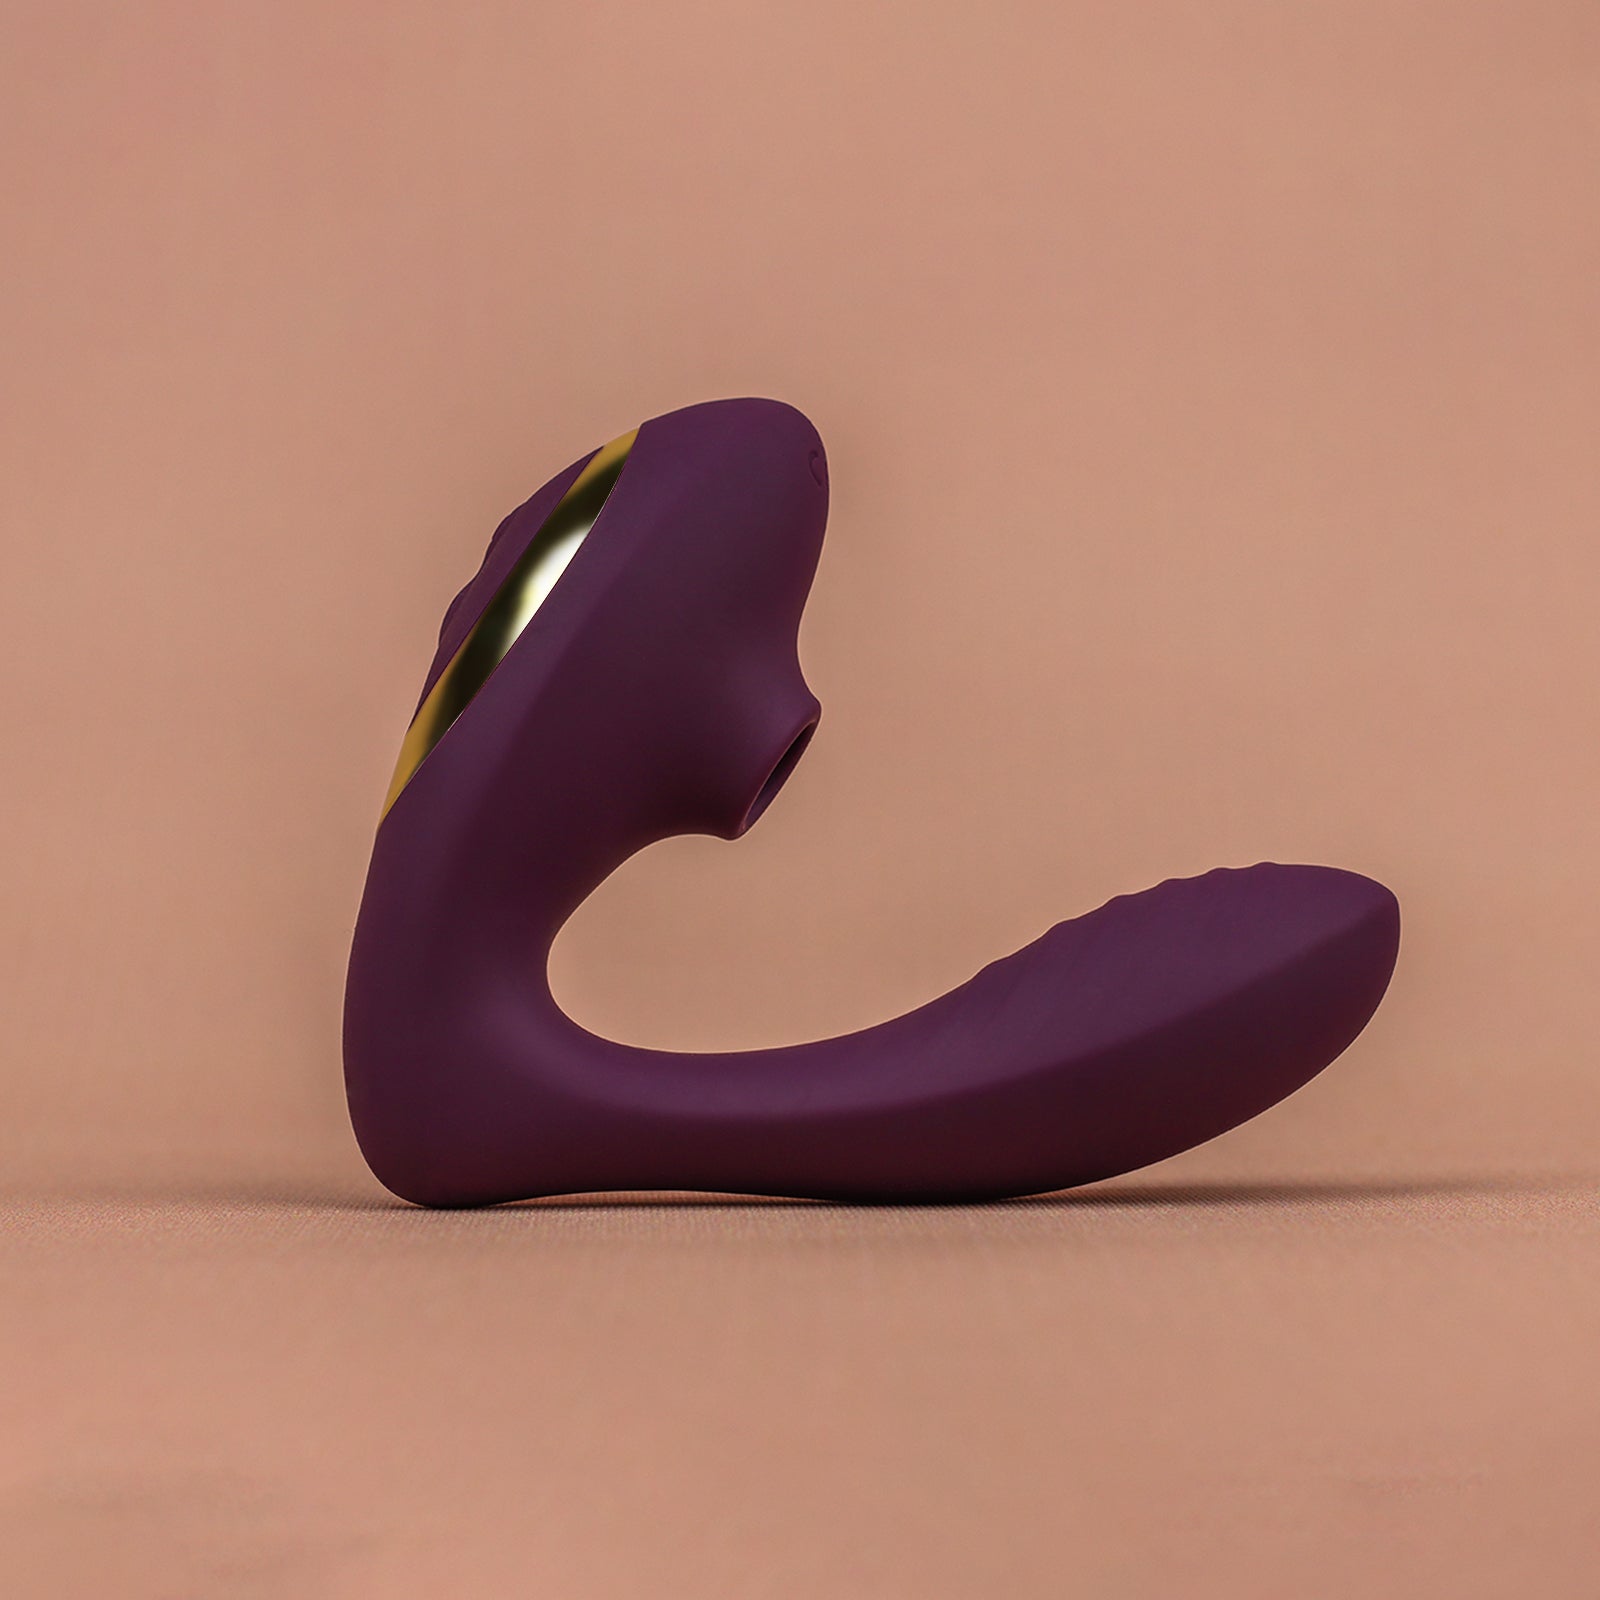 Purple) Tracy's Dog Clitoral Sucking Vibrator, G Spot Clitorus